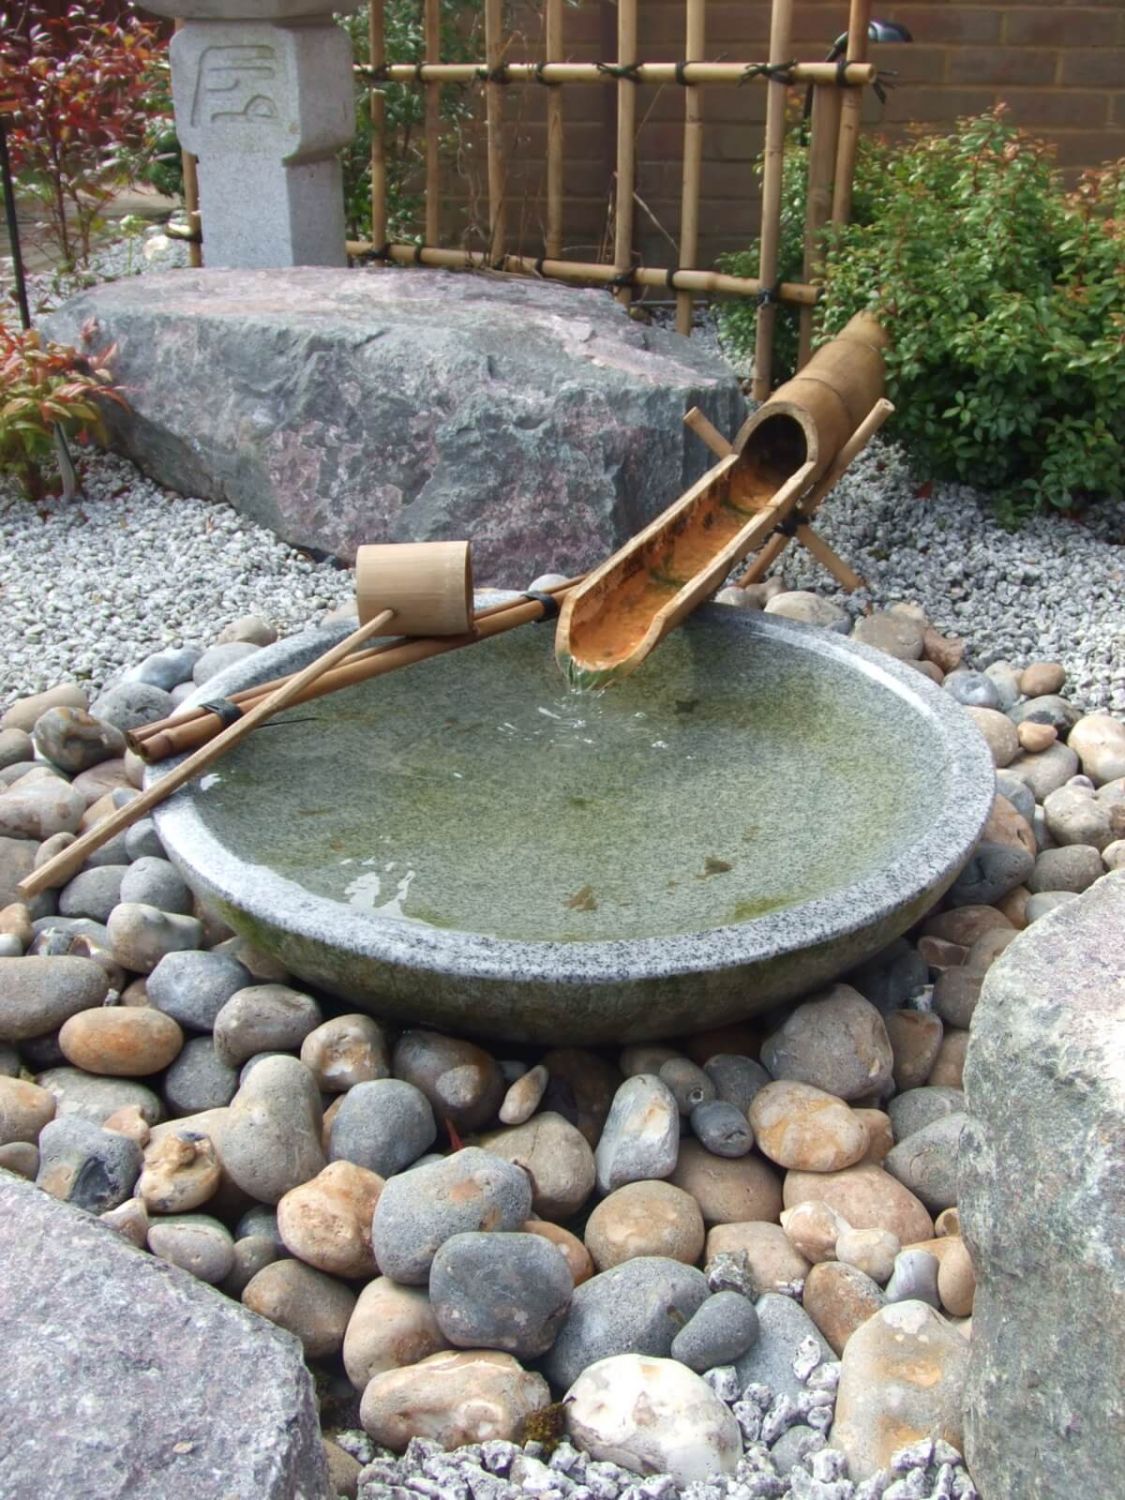 Water en bamboe zijn onmisbaar in een japanse tuin